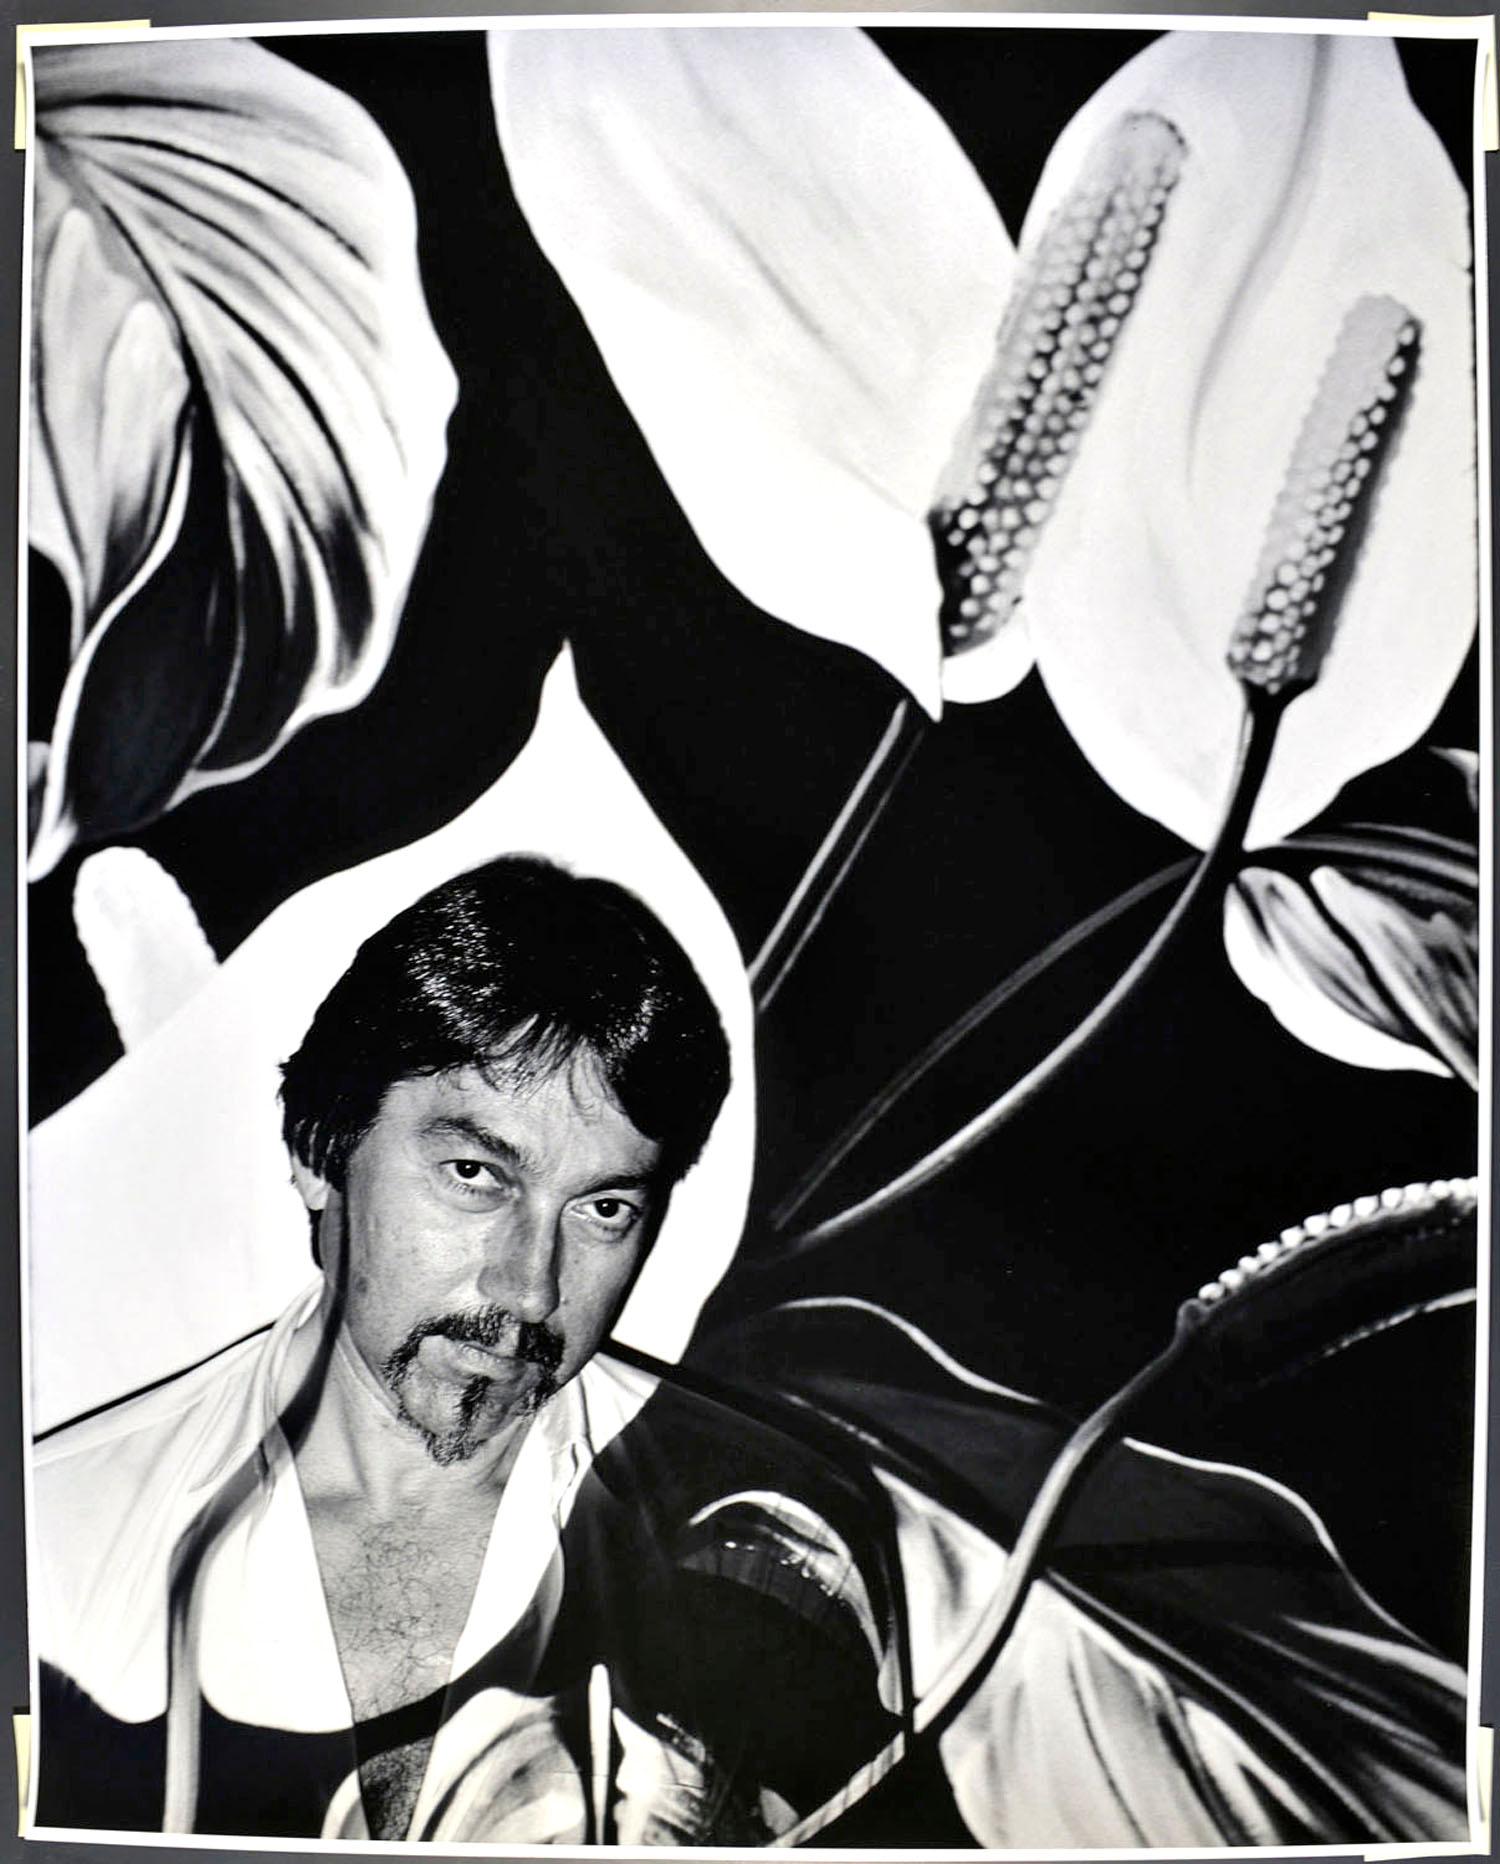 16x20" alte Silbergelatinefotografie des Malers Lowell Nesbitt mit überlagernder Projektion eines seiner Gemälde, 1982. Signiert auf der Rückseite des Drucks von Jack Mitchell. Kommt direkt aus dem Jack Mitchell Archiv mit einem Echtheitszertifikat.